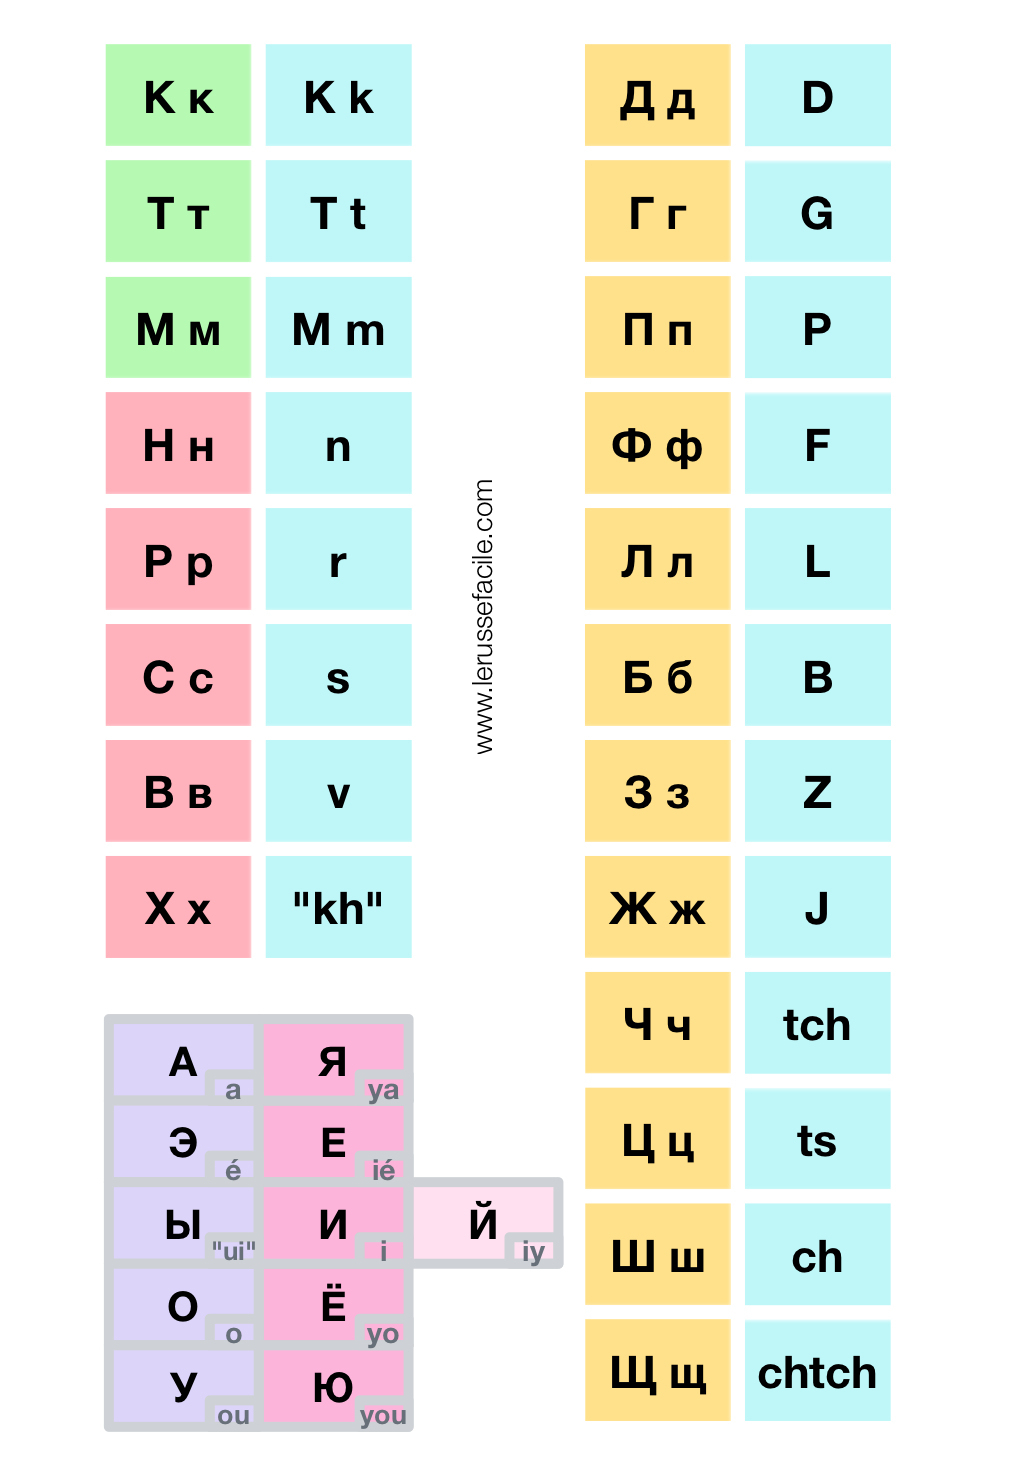 Apprendre L'alphabet Cyrillique Facilement | Le Russe Facile tout Apprendre Les Lettres De L Alphabet